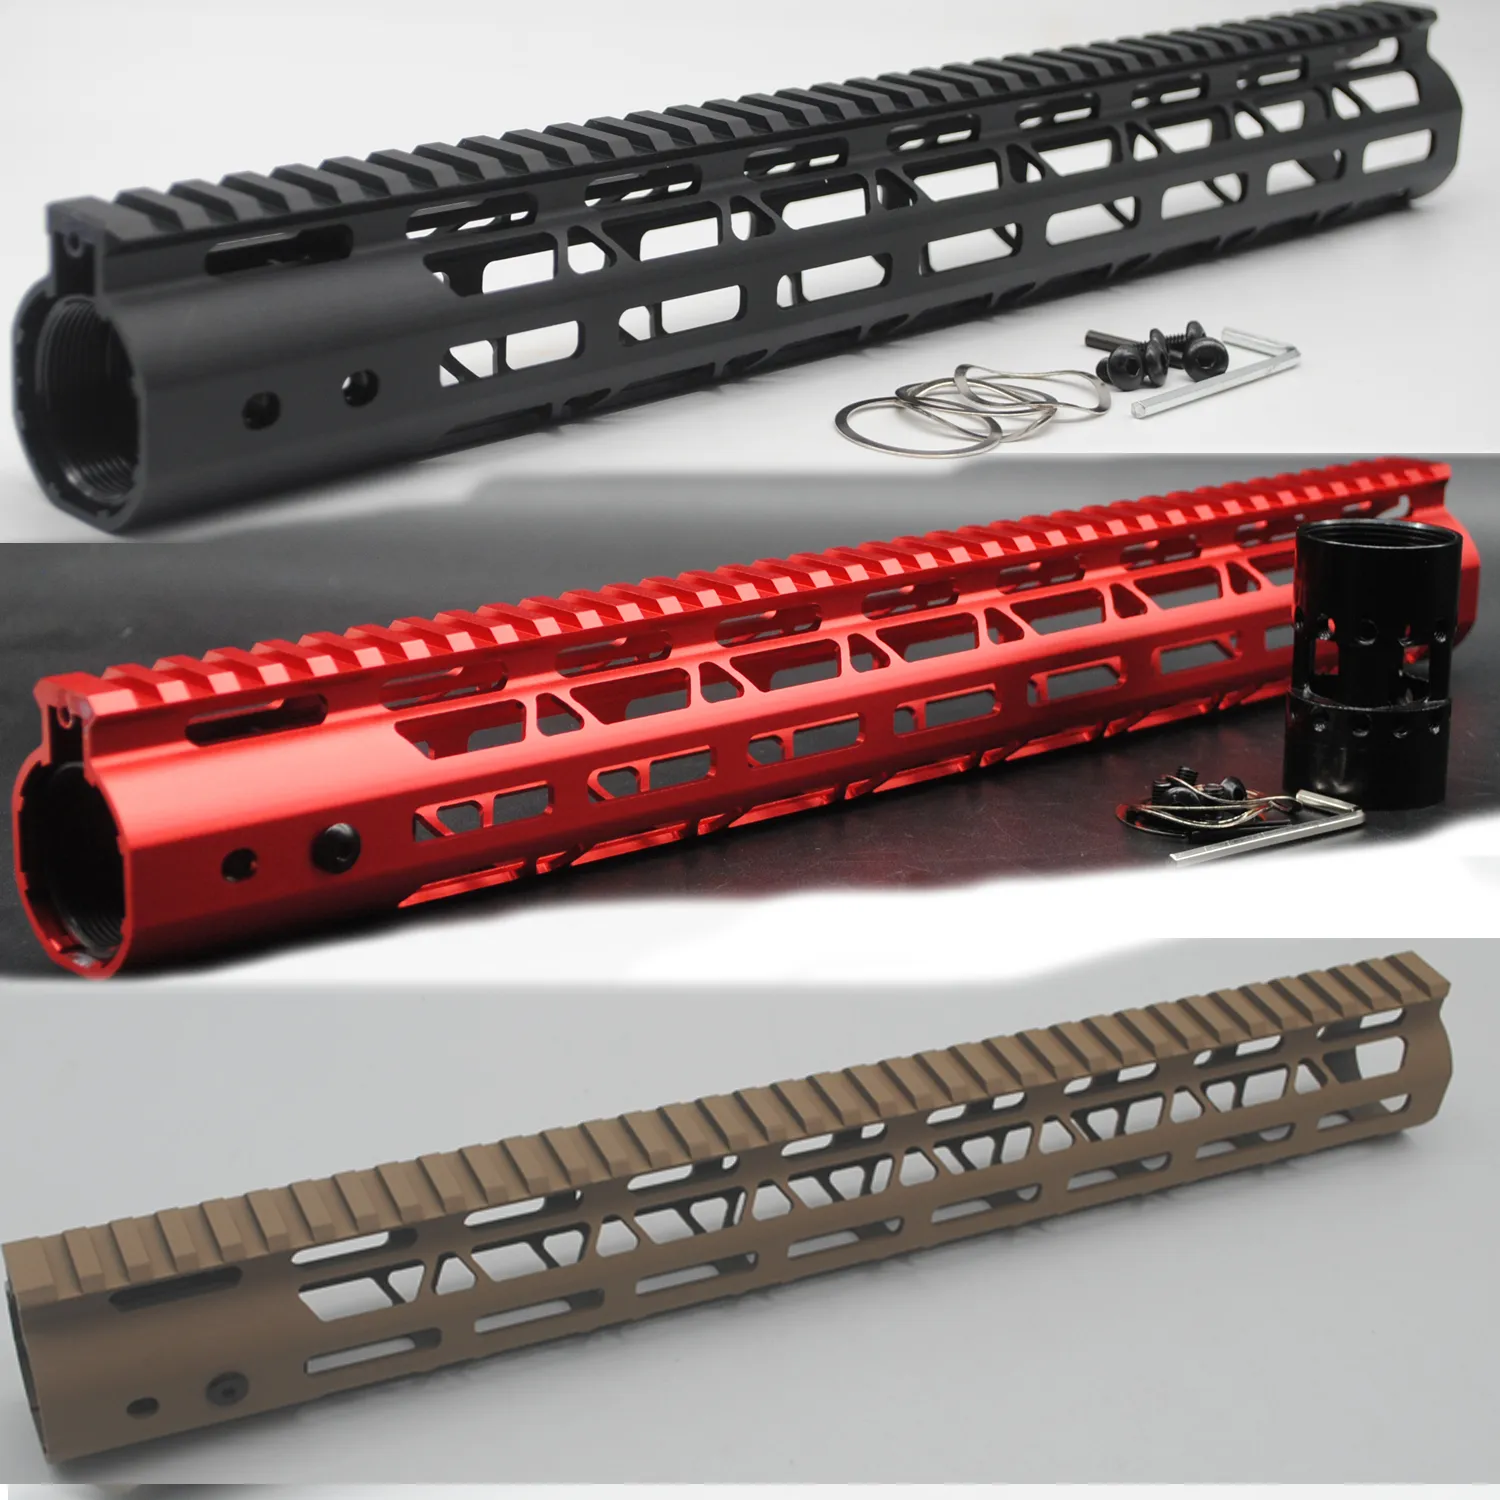 Rail de garde-main m-lok de 15 pouces de longueur, nouveau système de montage à flotteur gratuit, couleur noir/rouge/Tan adapté au fusil .223/5.56